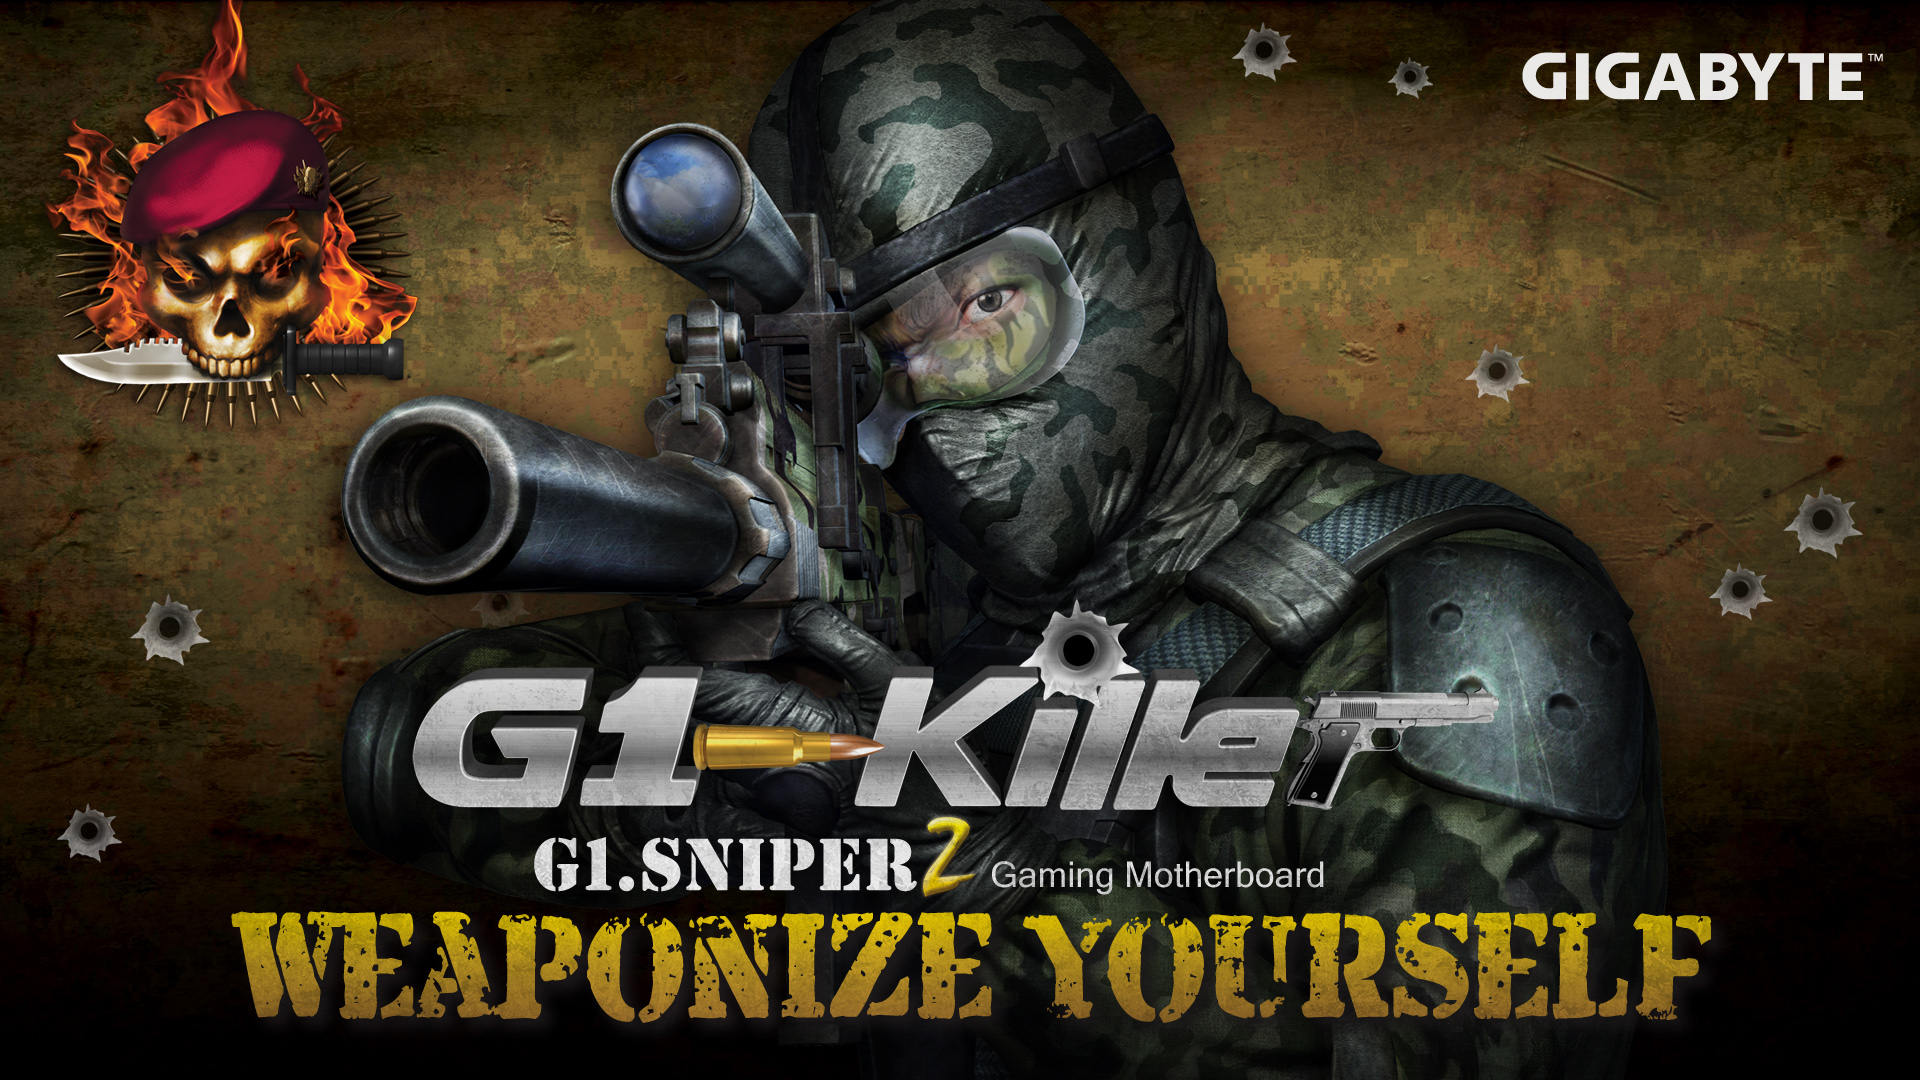 Gigabyte G1 Killer , HD Wallpaper & Backgrounds